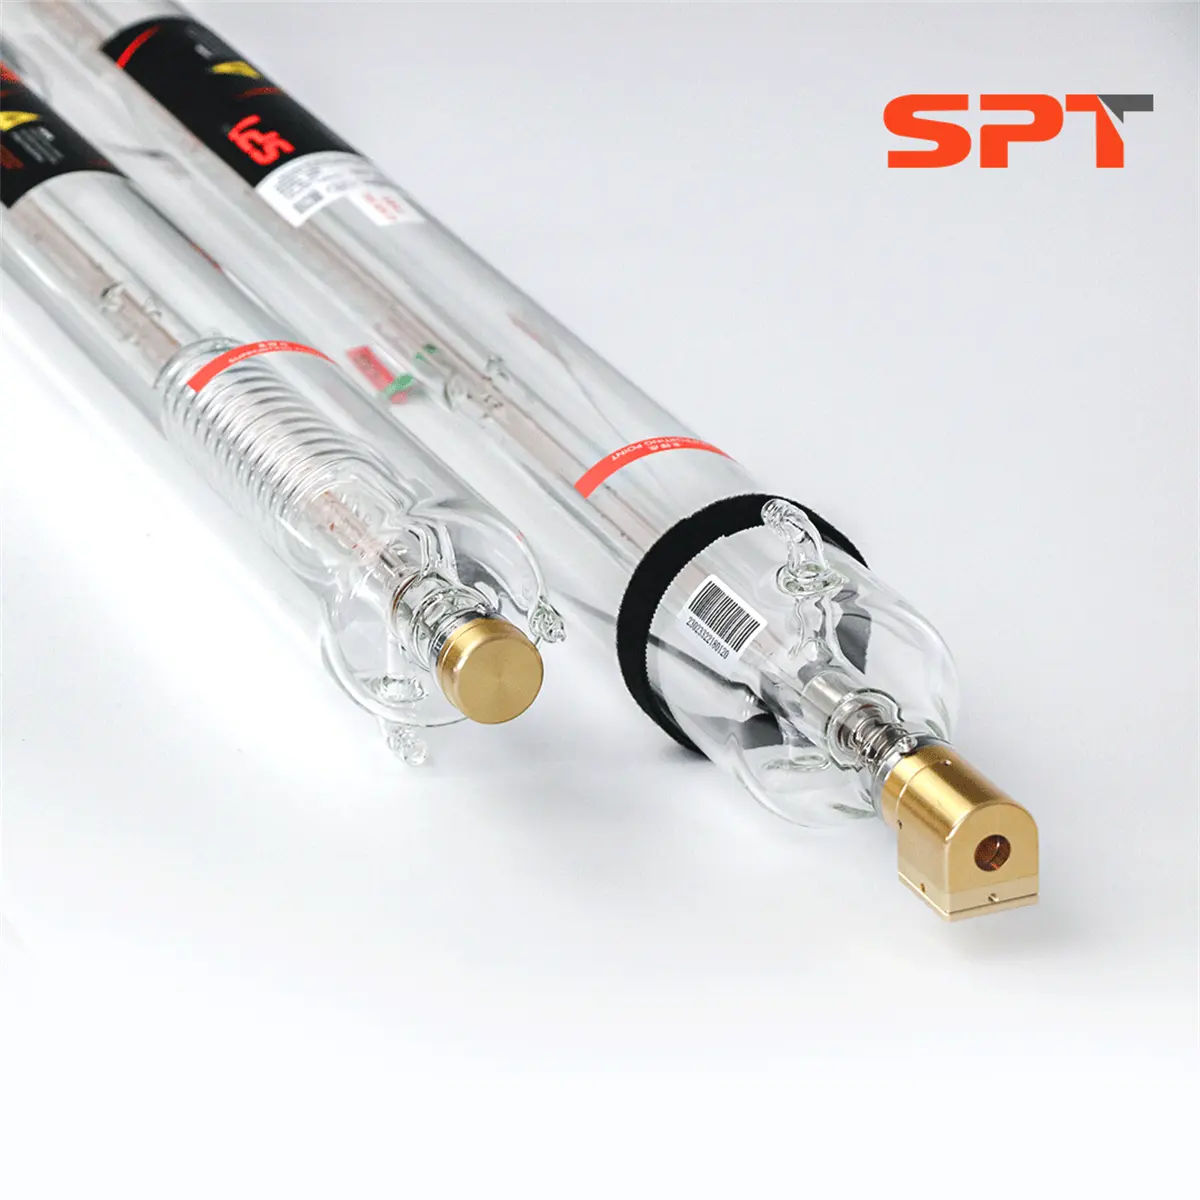 Spt tubo de laser co2 de alta potência, 100w, com ponteiro vermelho, para corte a laser, materiais não metálicos, tais como acrílico/mdf